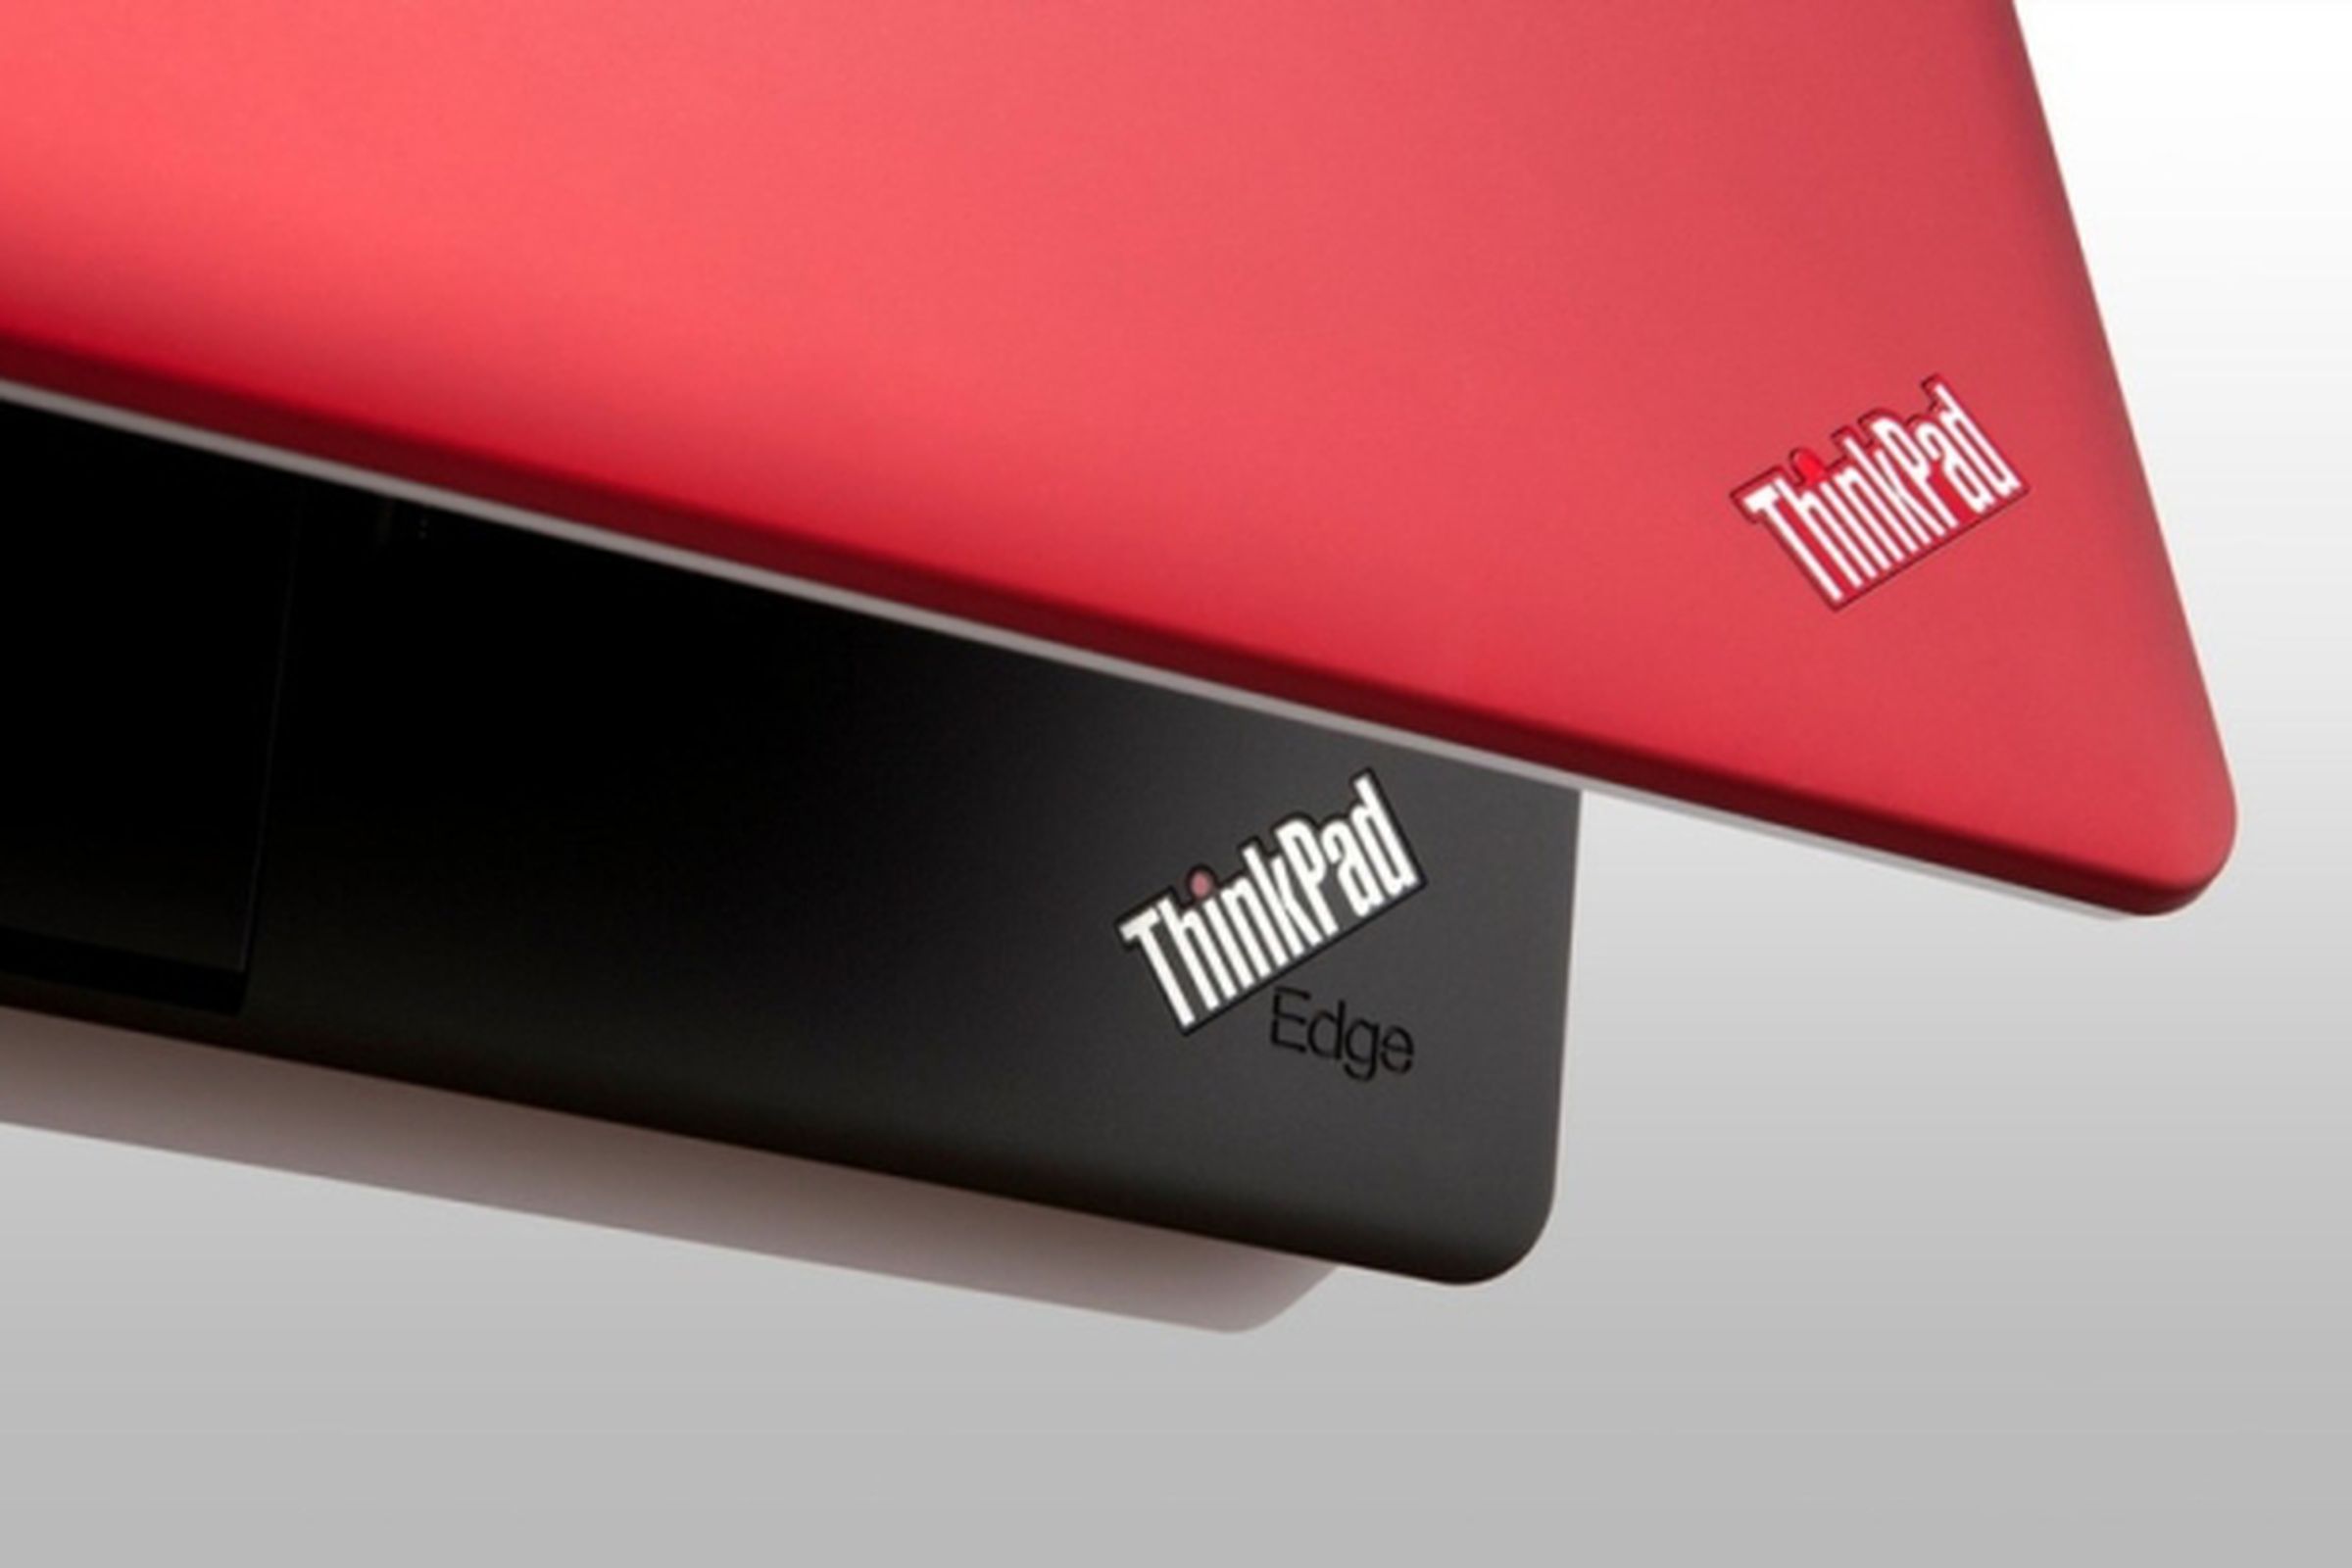 Lenovo ThinkPad Edge stock 640